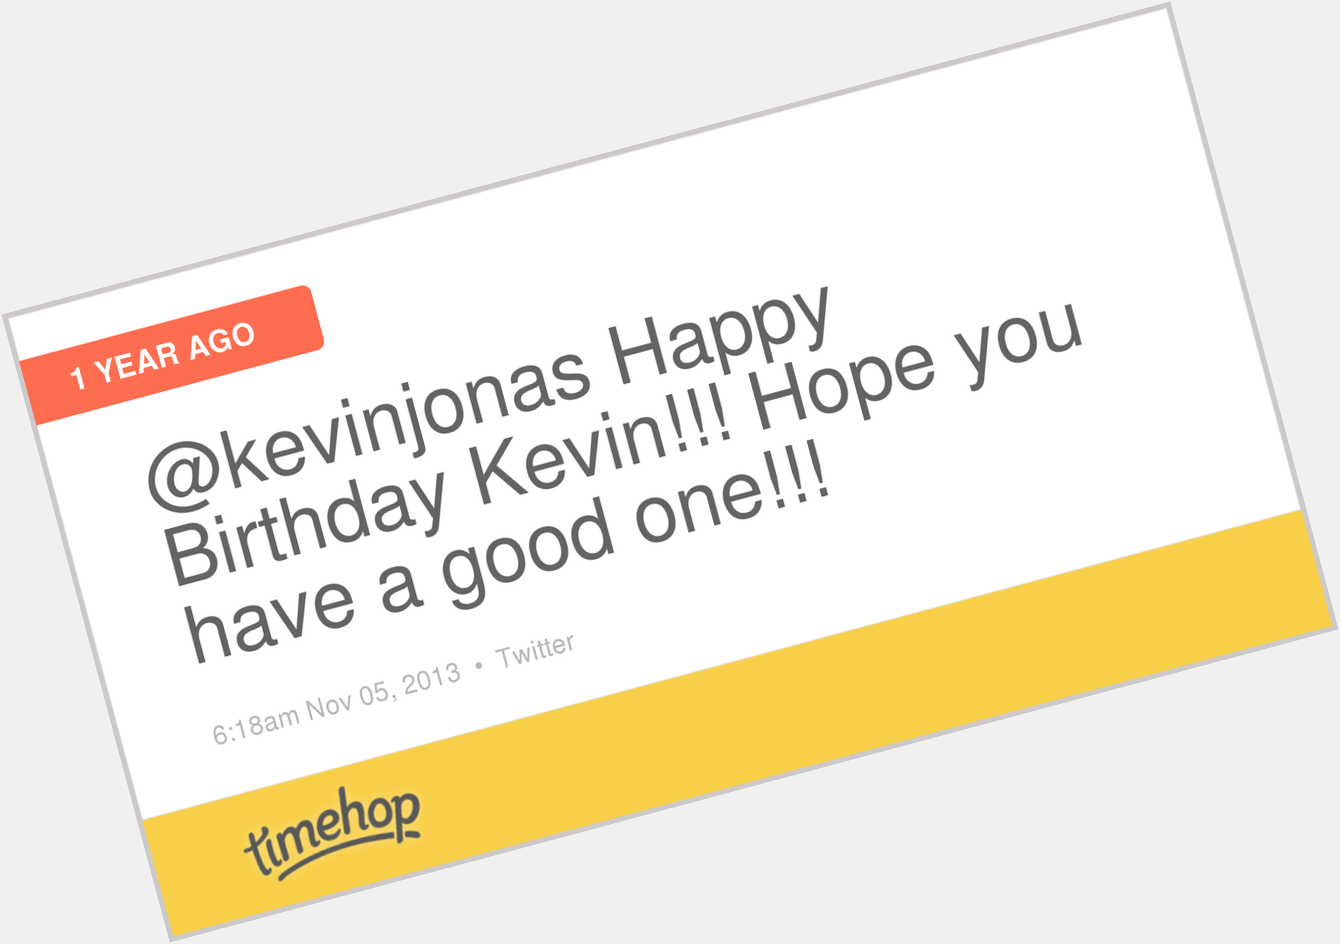 Happy Birthday Kevin Jonas!!!  